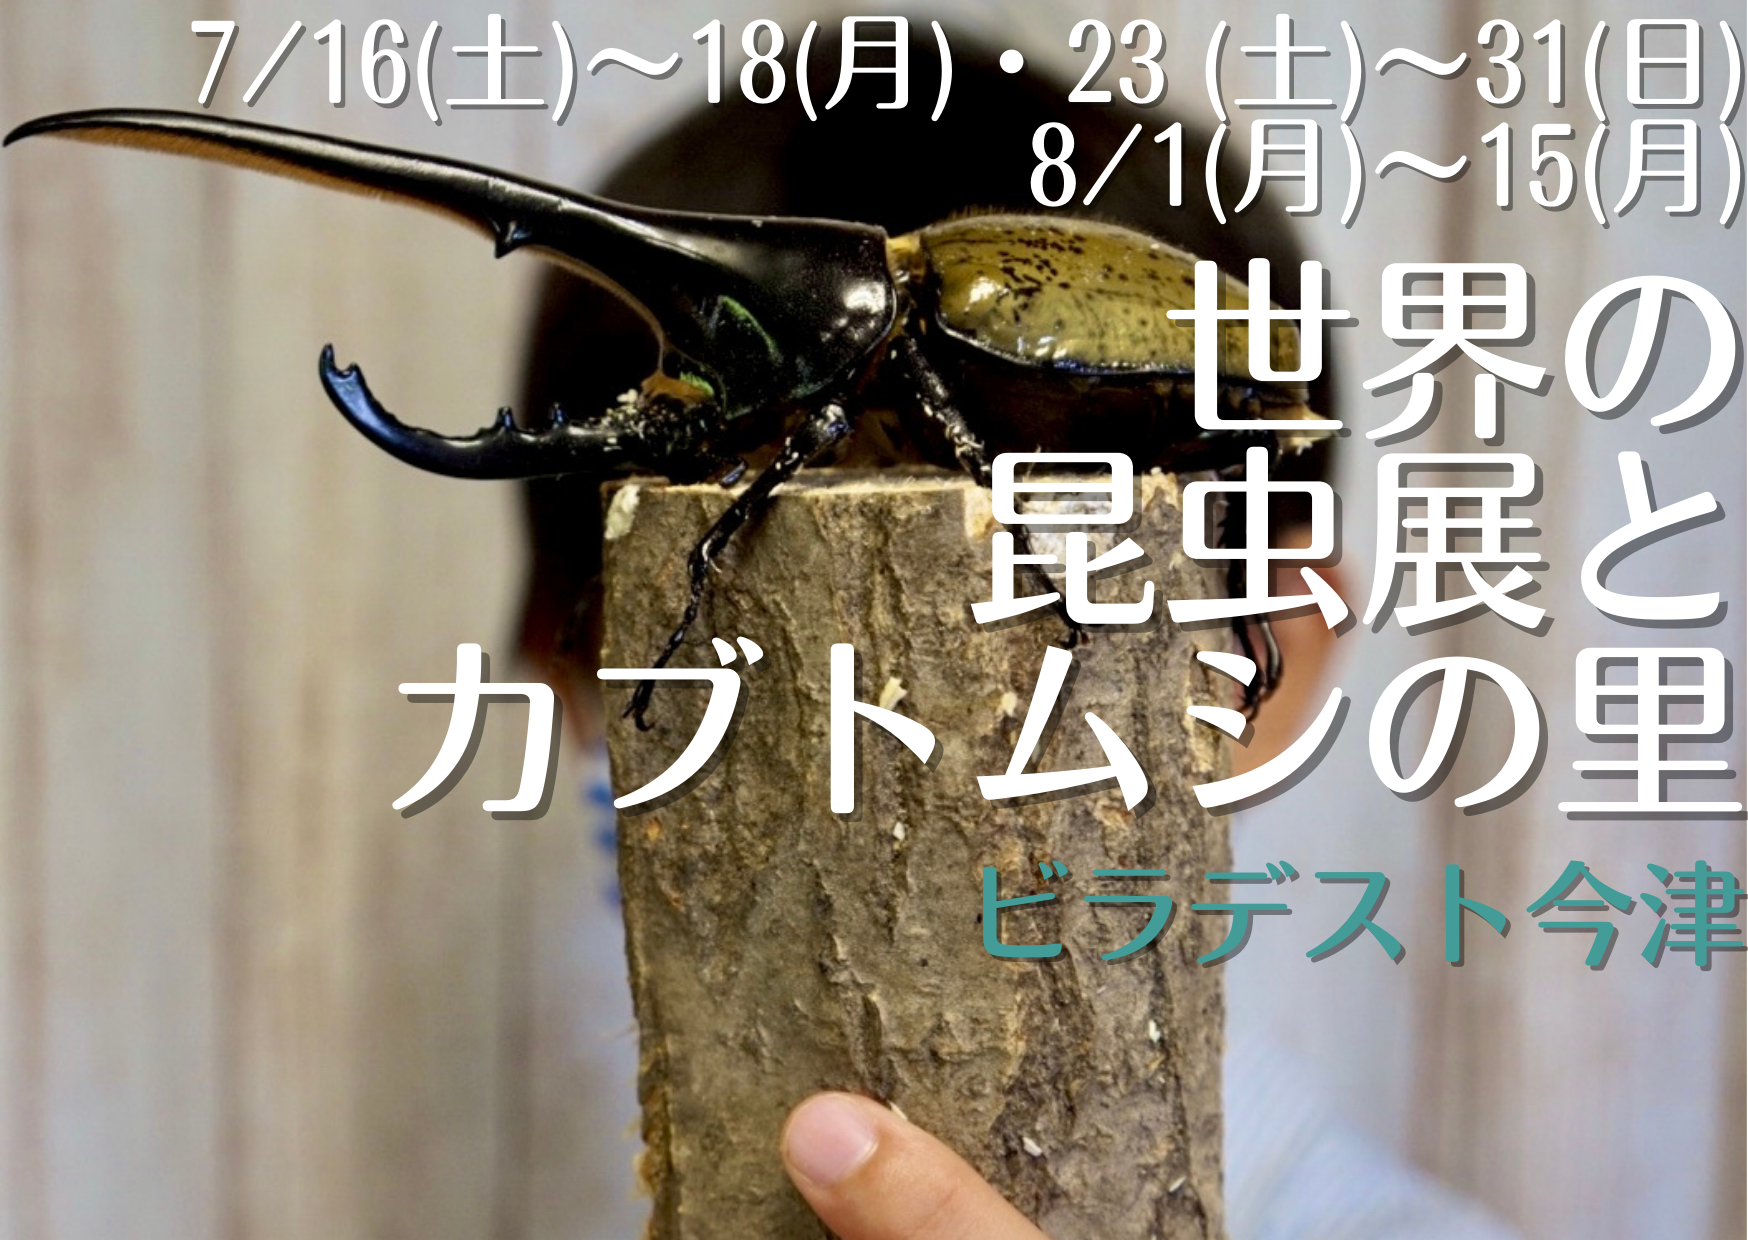 世界の昆虫展とカブトムシの里【ビラデスト今津】世界のカブト・クワガタの展示&記念撮影、自由に触…